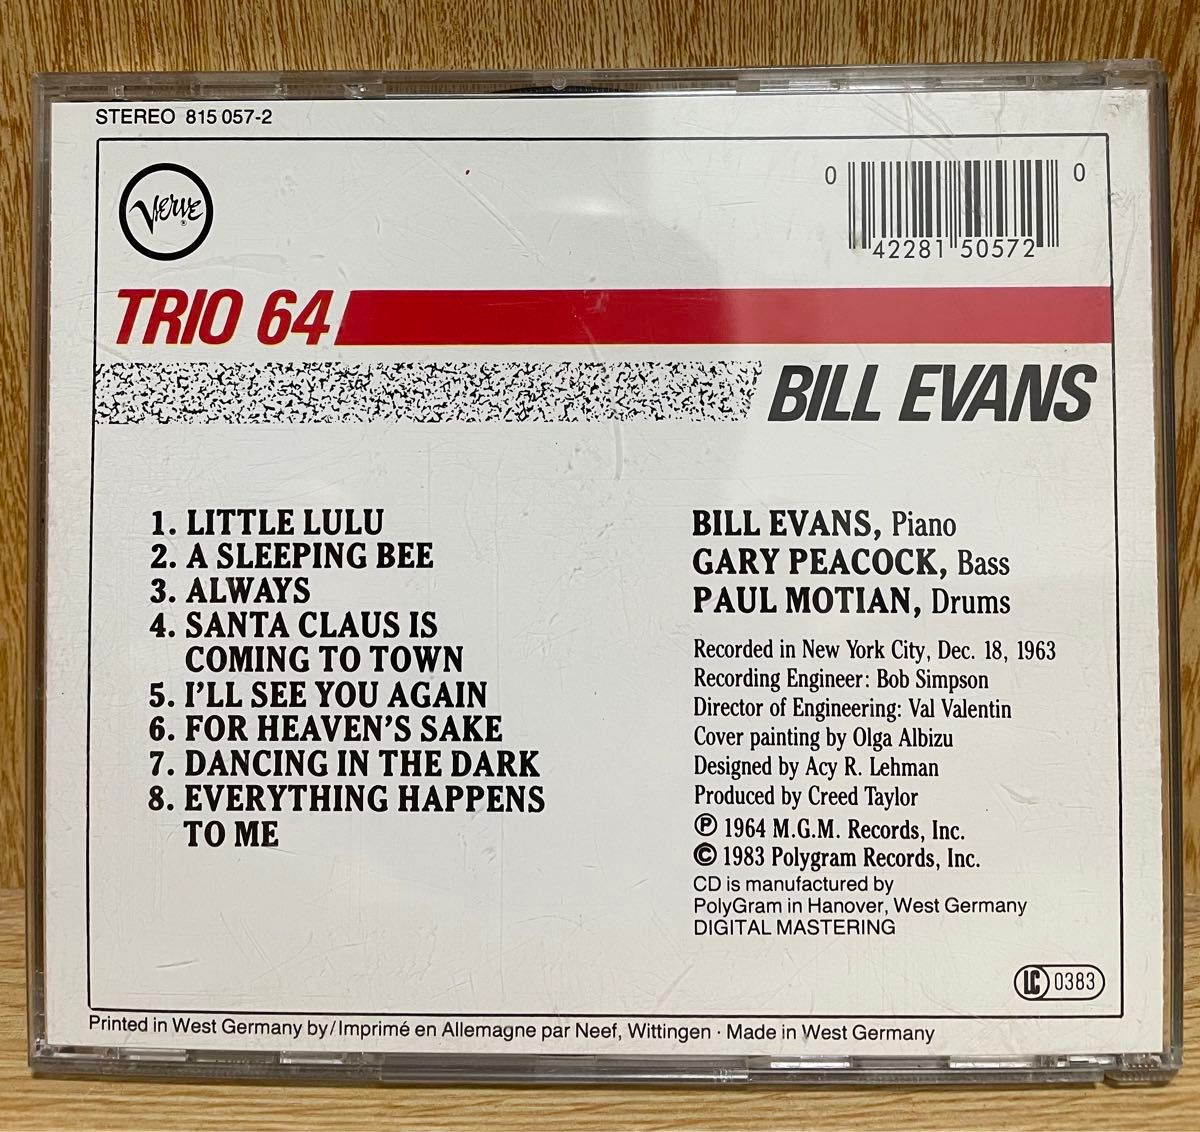 【西独盤CD】BILL EVANS/TRIO 64/全面蒸着/PDO刻印/815 057-2 01 AR/重厚プラケース